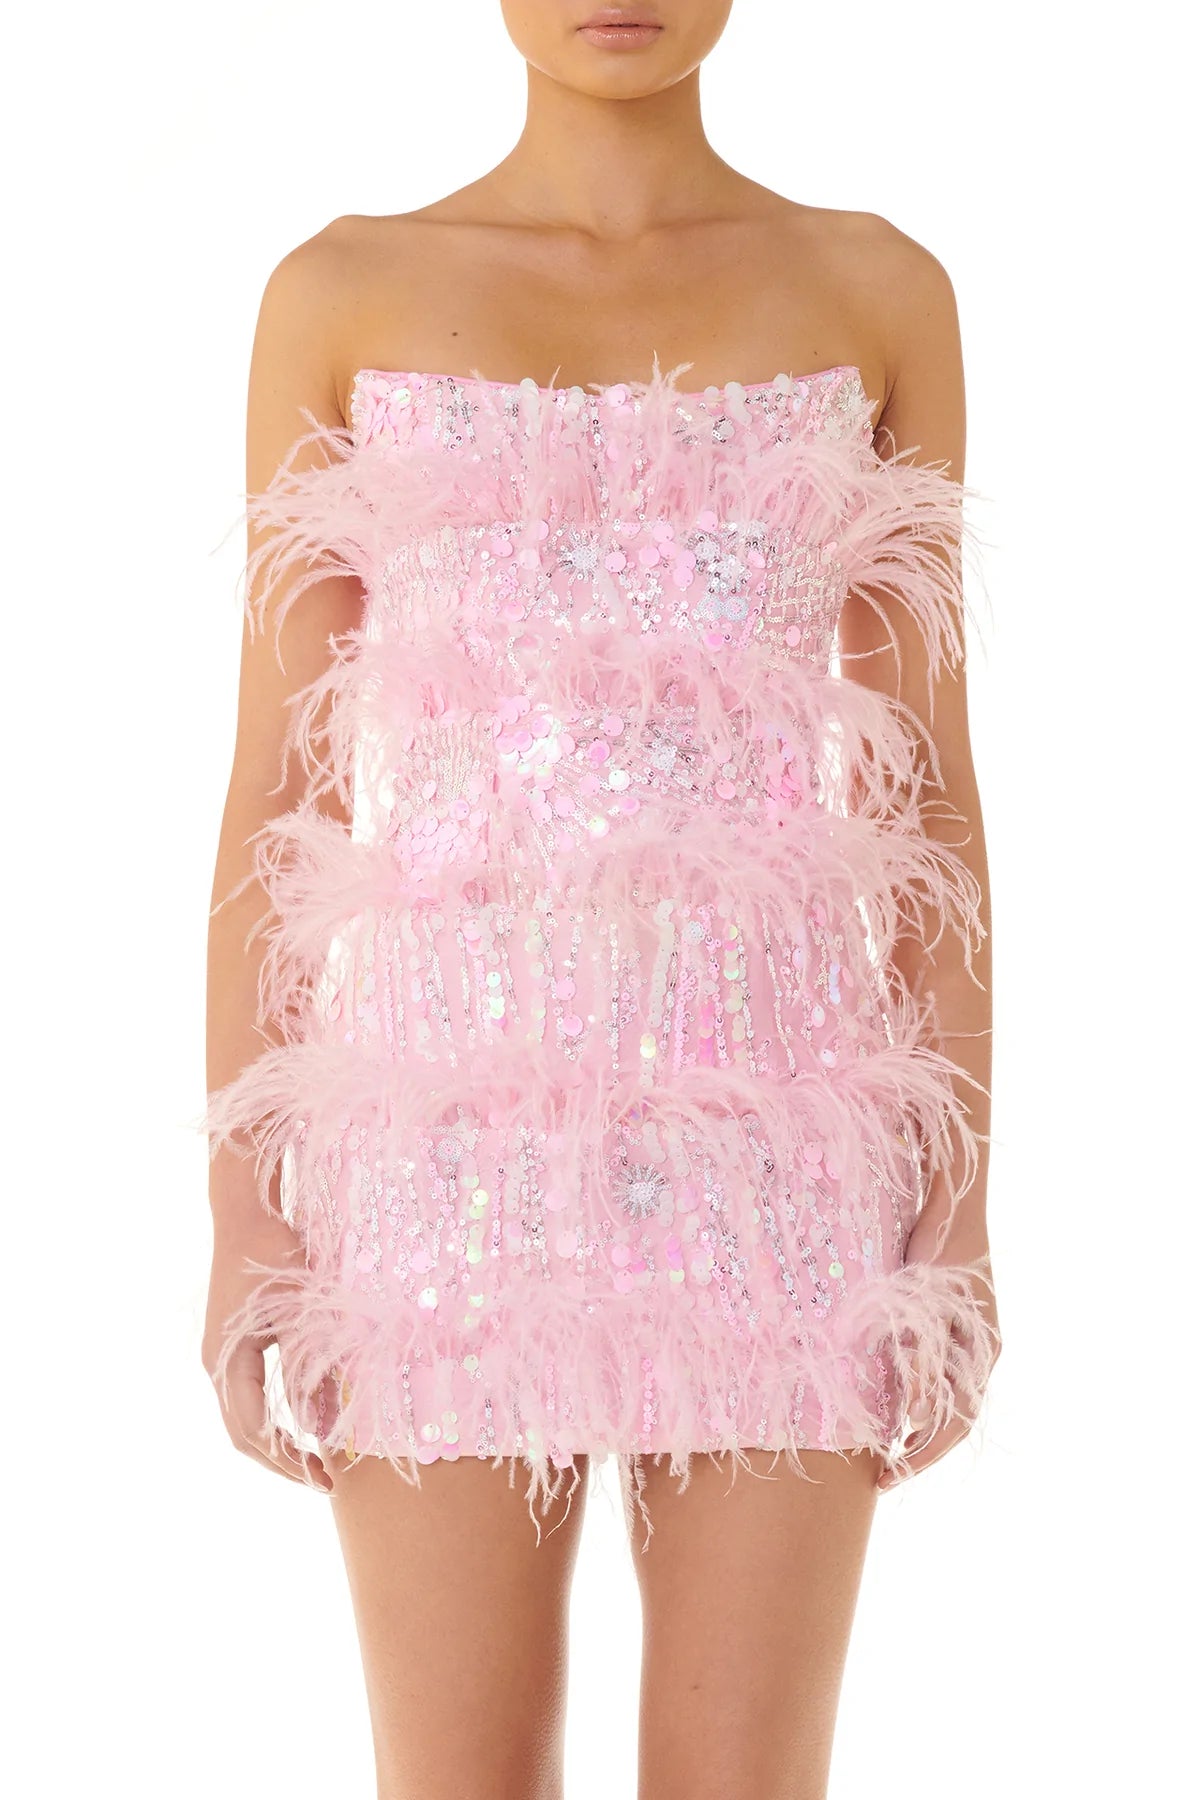 Tiffany Dress - Pink